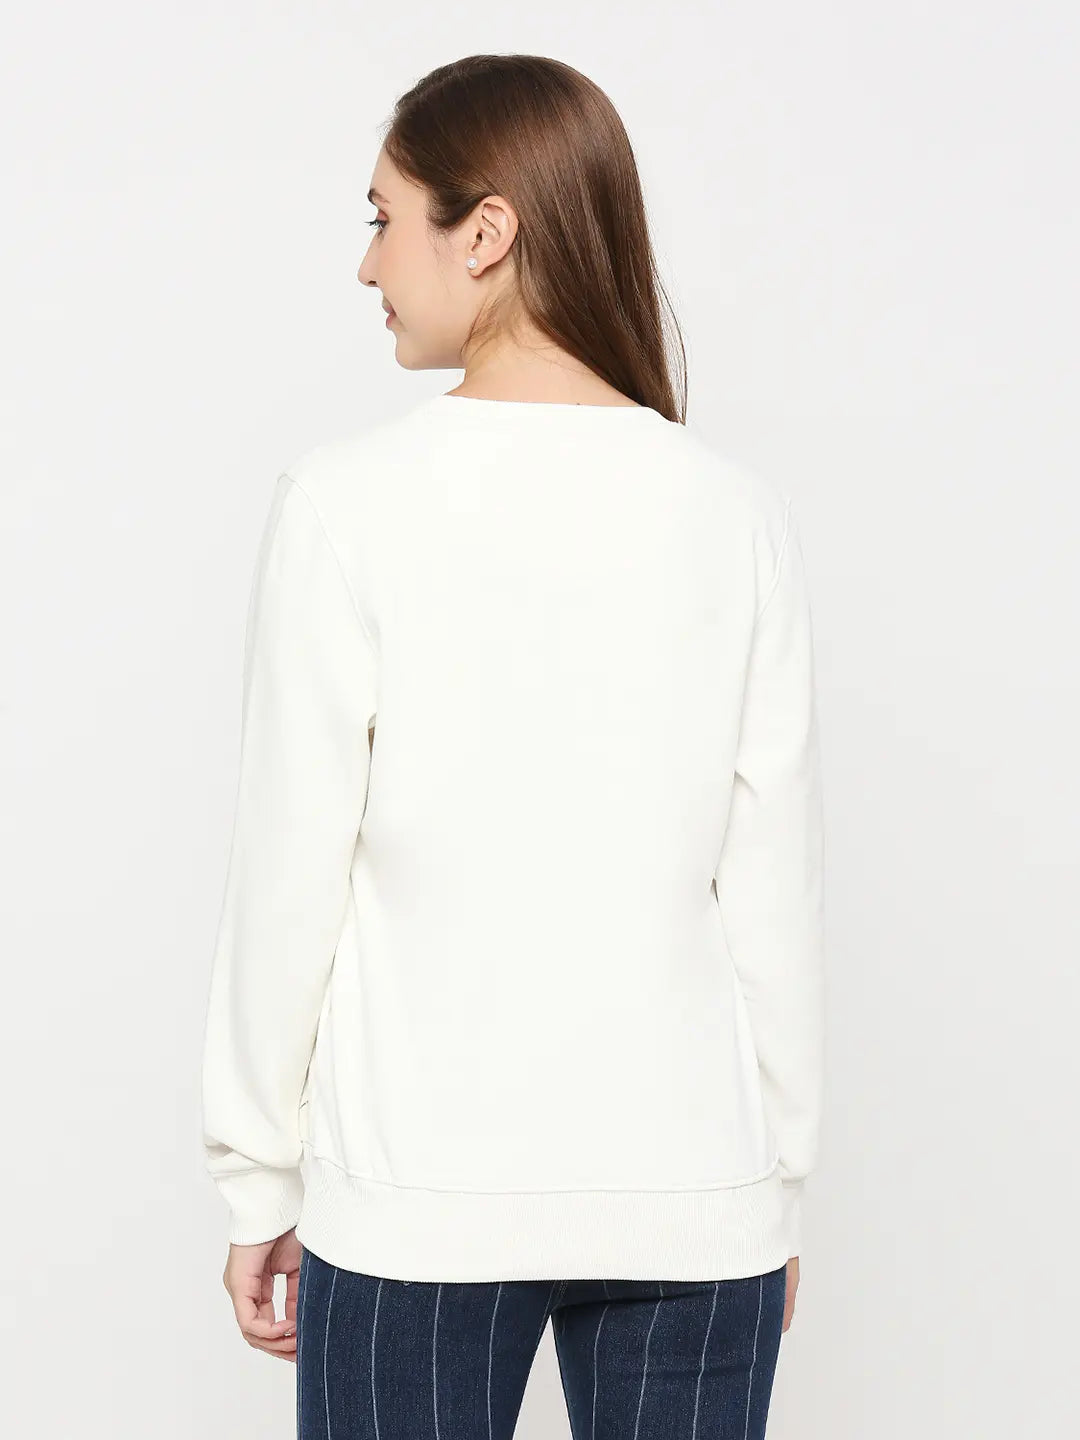 Spykar White Cotton Blend Full Sleeve Round Neck Sweatshirts For Women